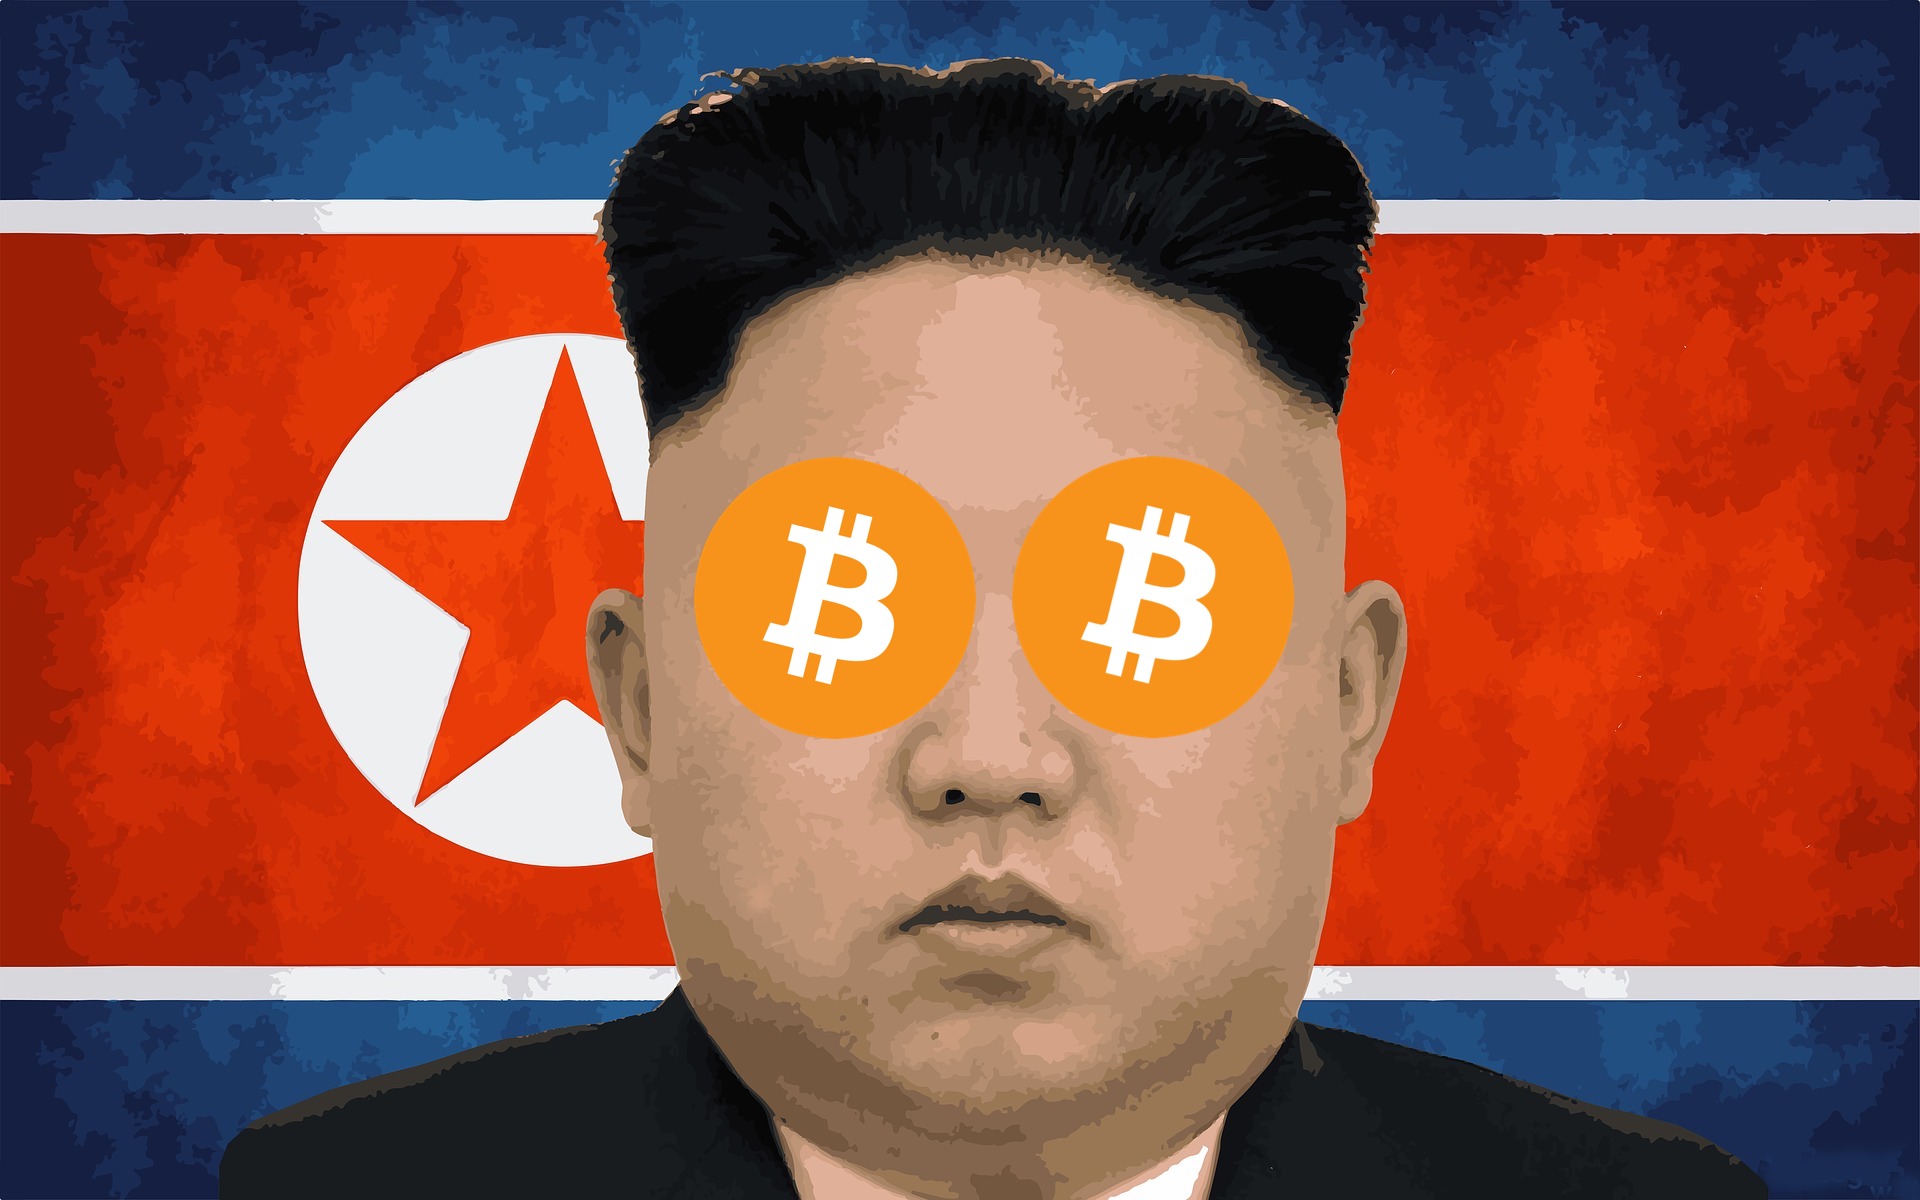 هکرهای کره شمالی بیش از یک میلیارد دلار رمزارز سرقت کردند